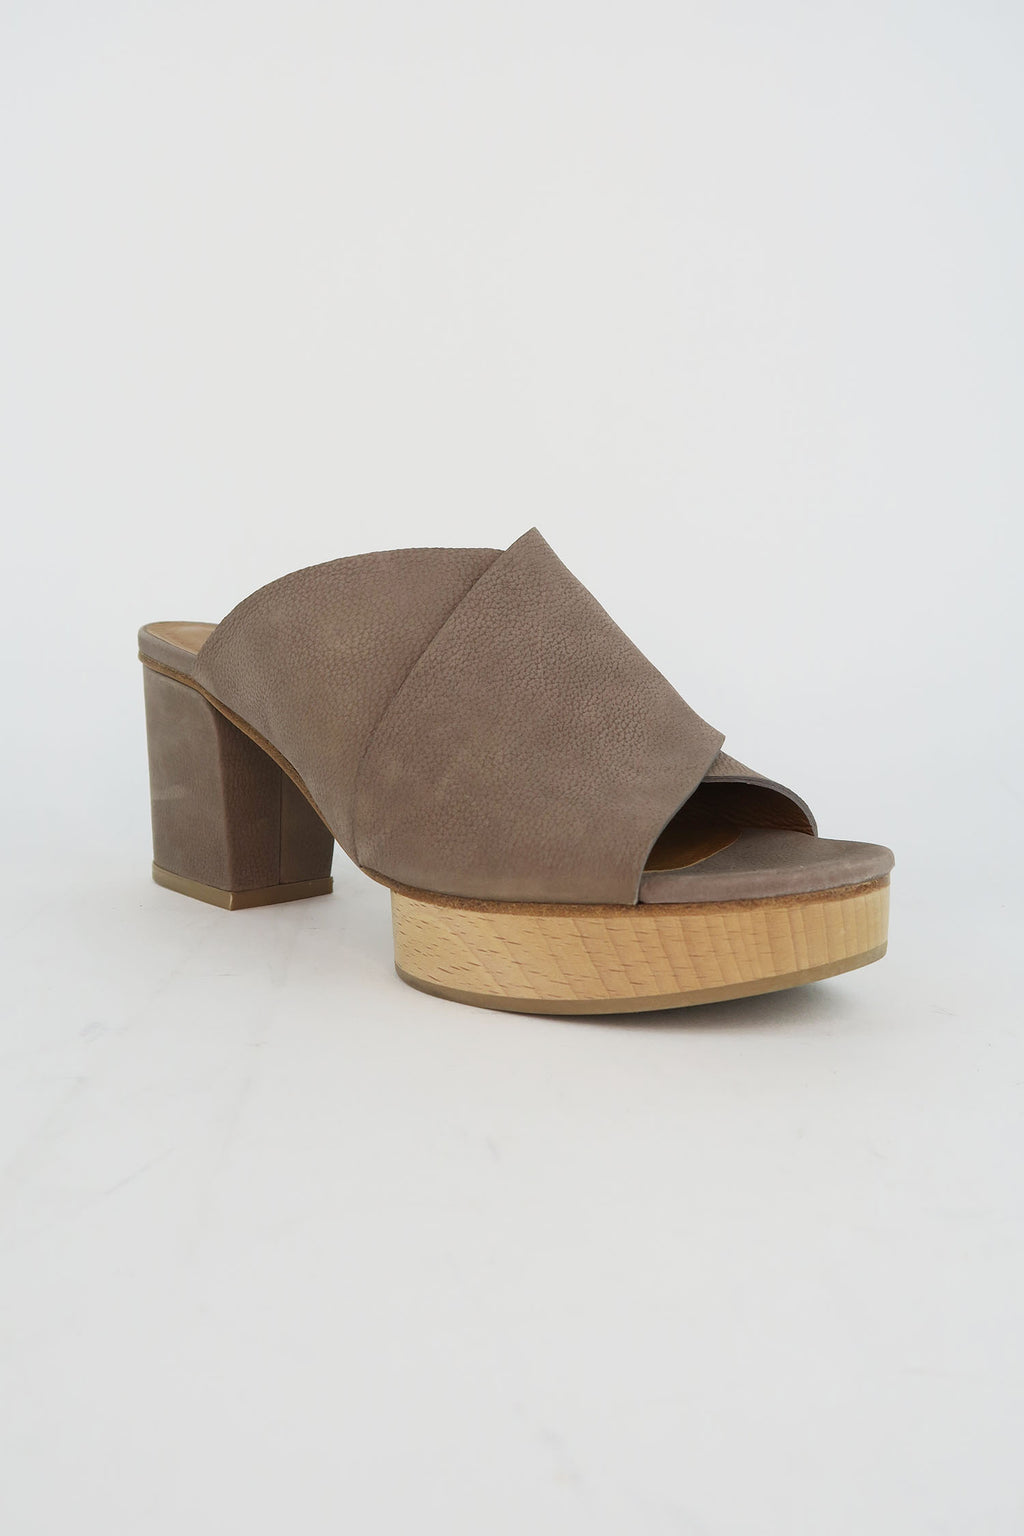 Coclico Leather Sandals sz 37